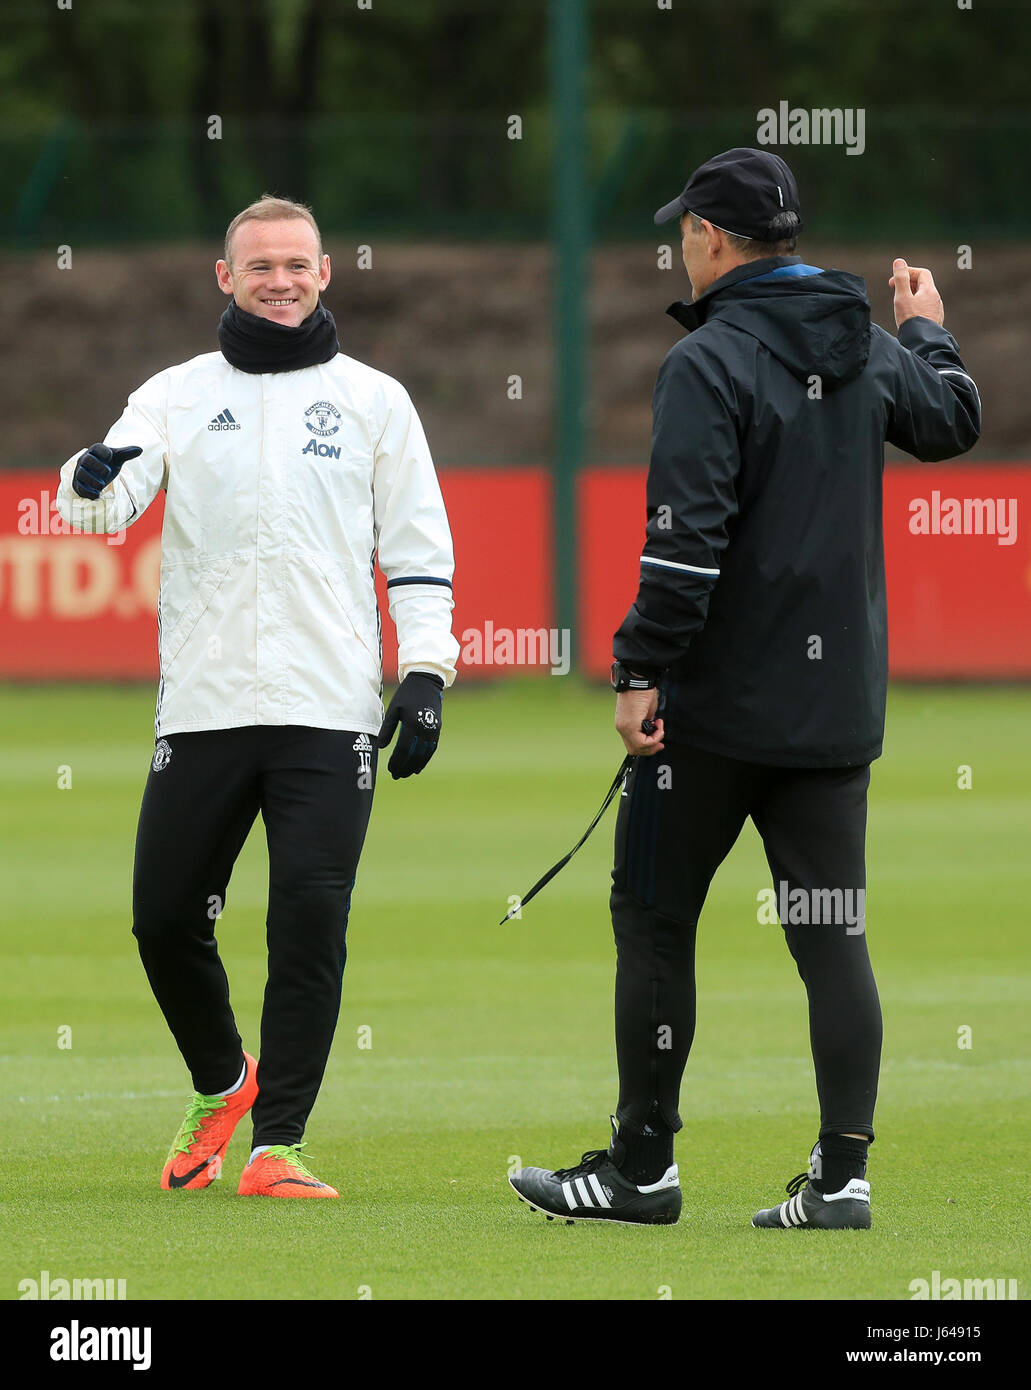 De Manchester United Wayne Rooney (à gauche) au cours d'une séance de formation à l'Aon complexe de formation, Carrington. Banque D'Images